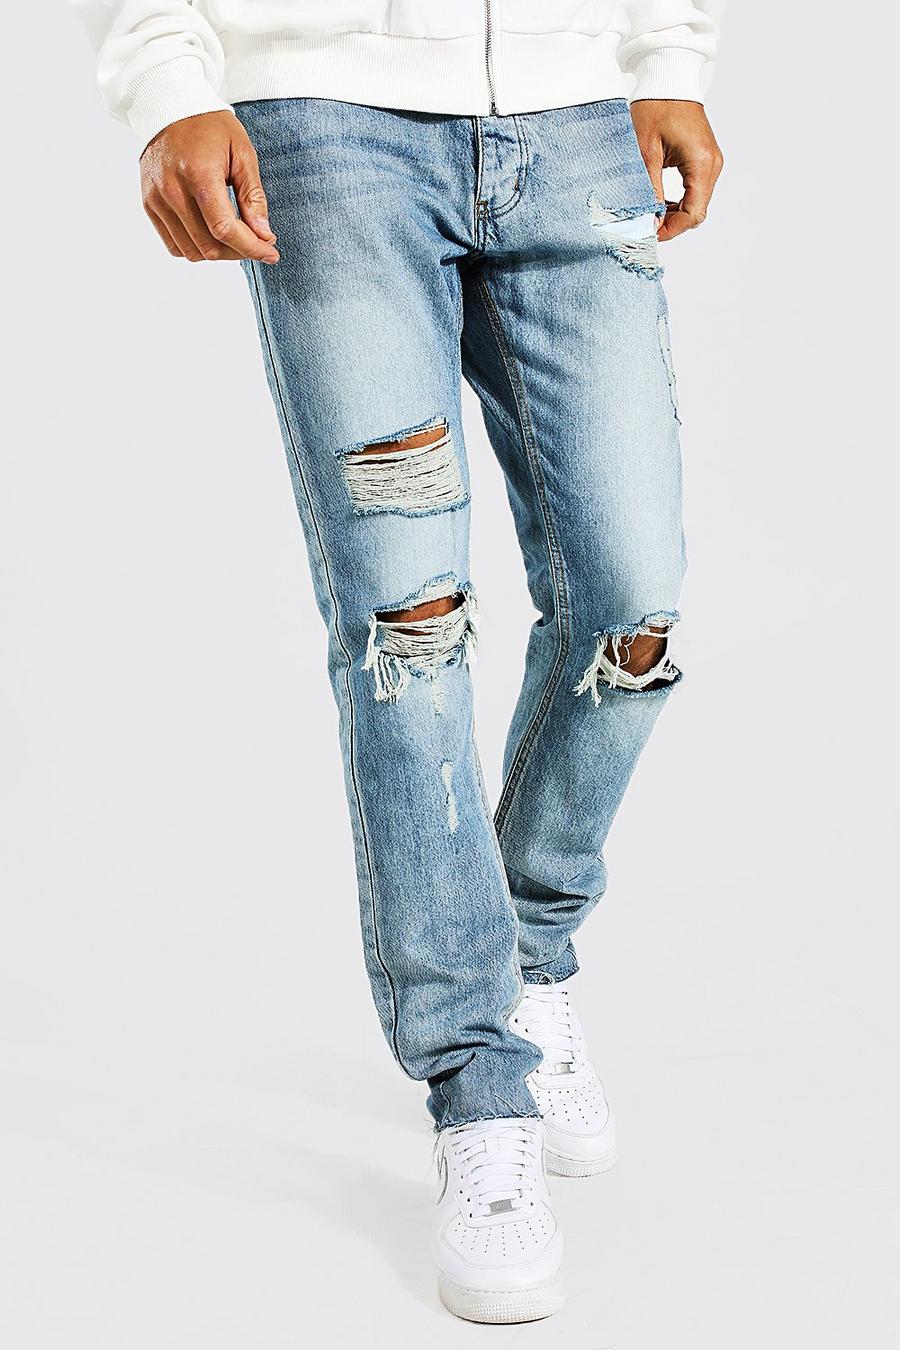 Jeans Tall Slim Fit con strappi e fondo consumato, Antique blue